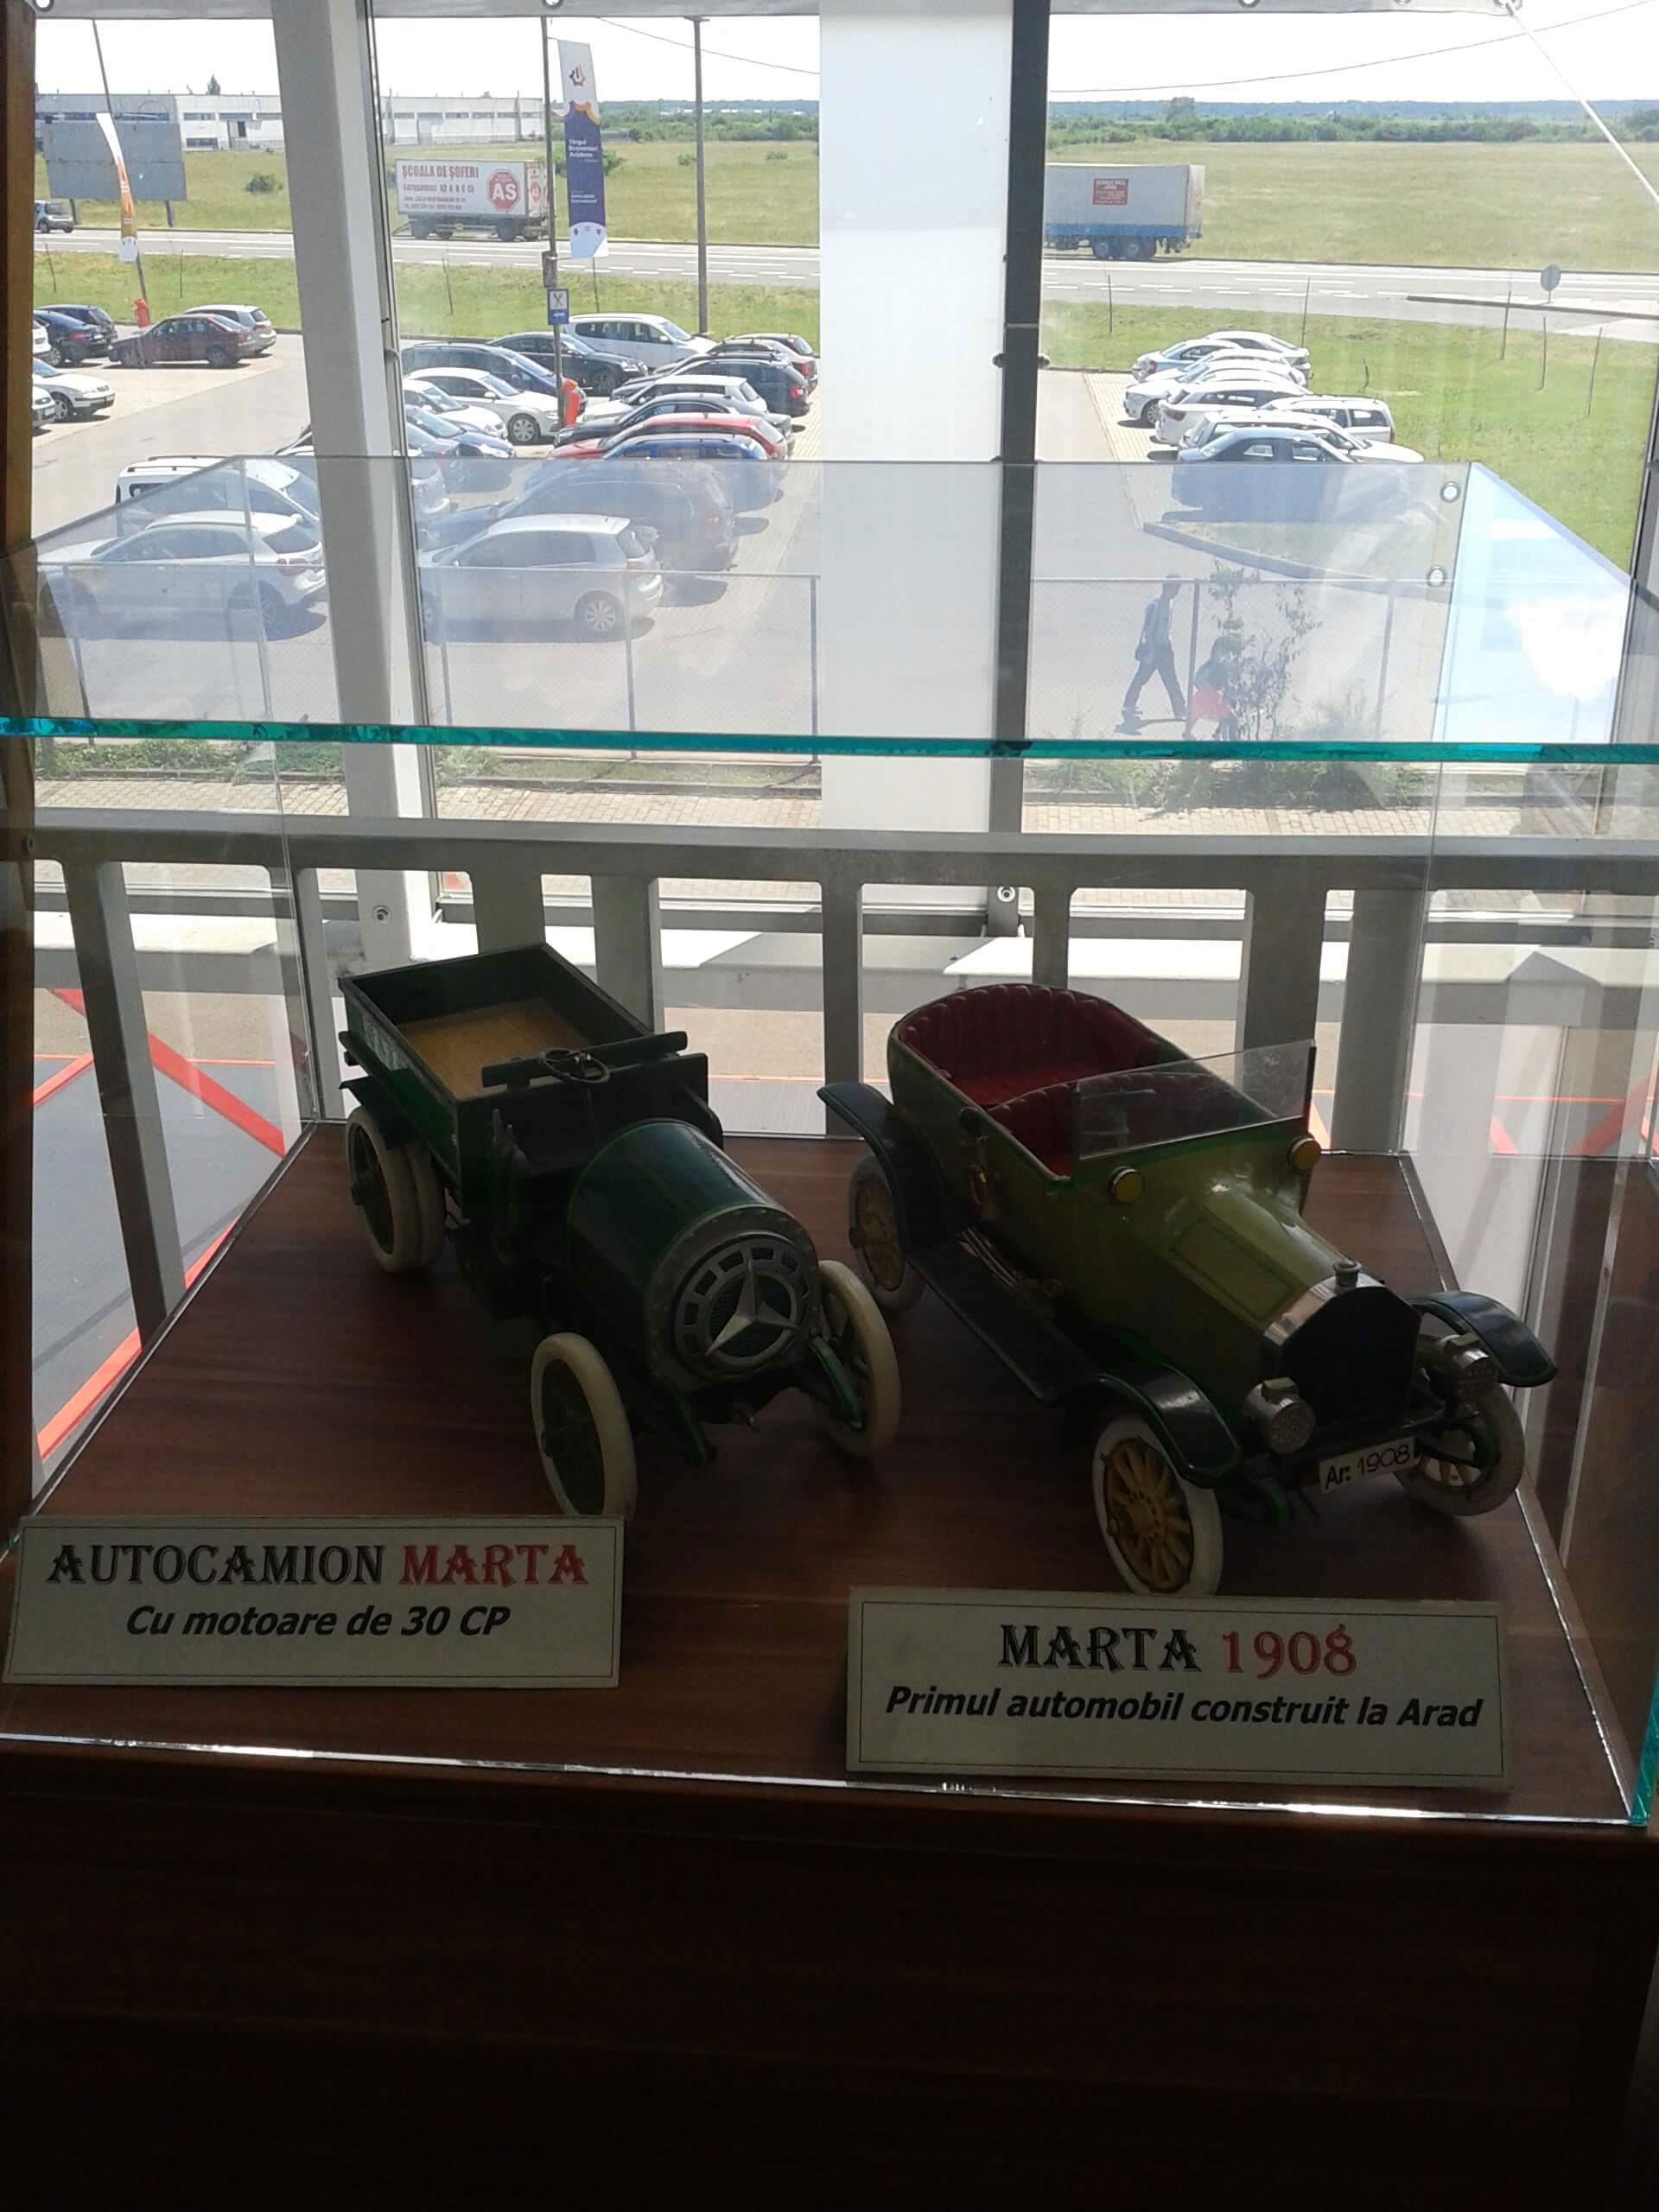 Primul automobil construit la Arad; Marta model 1908 și autocamion Marta